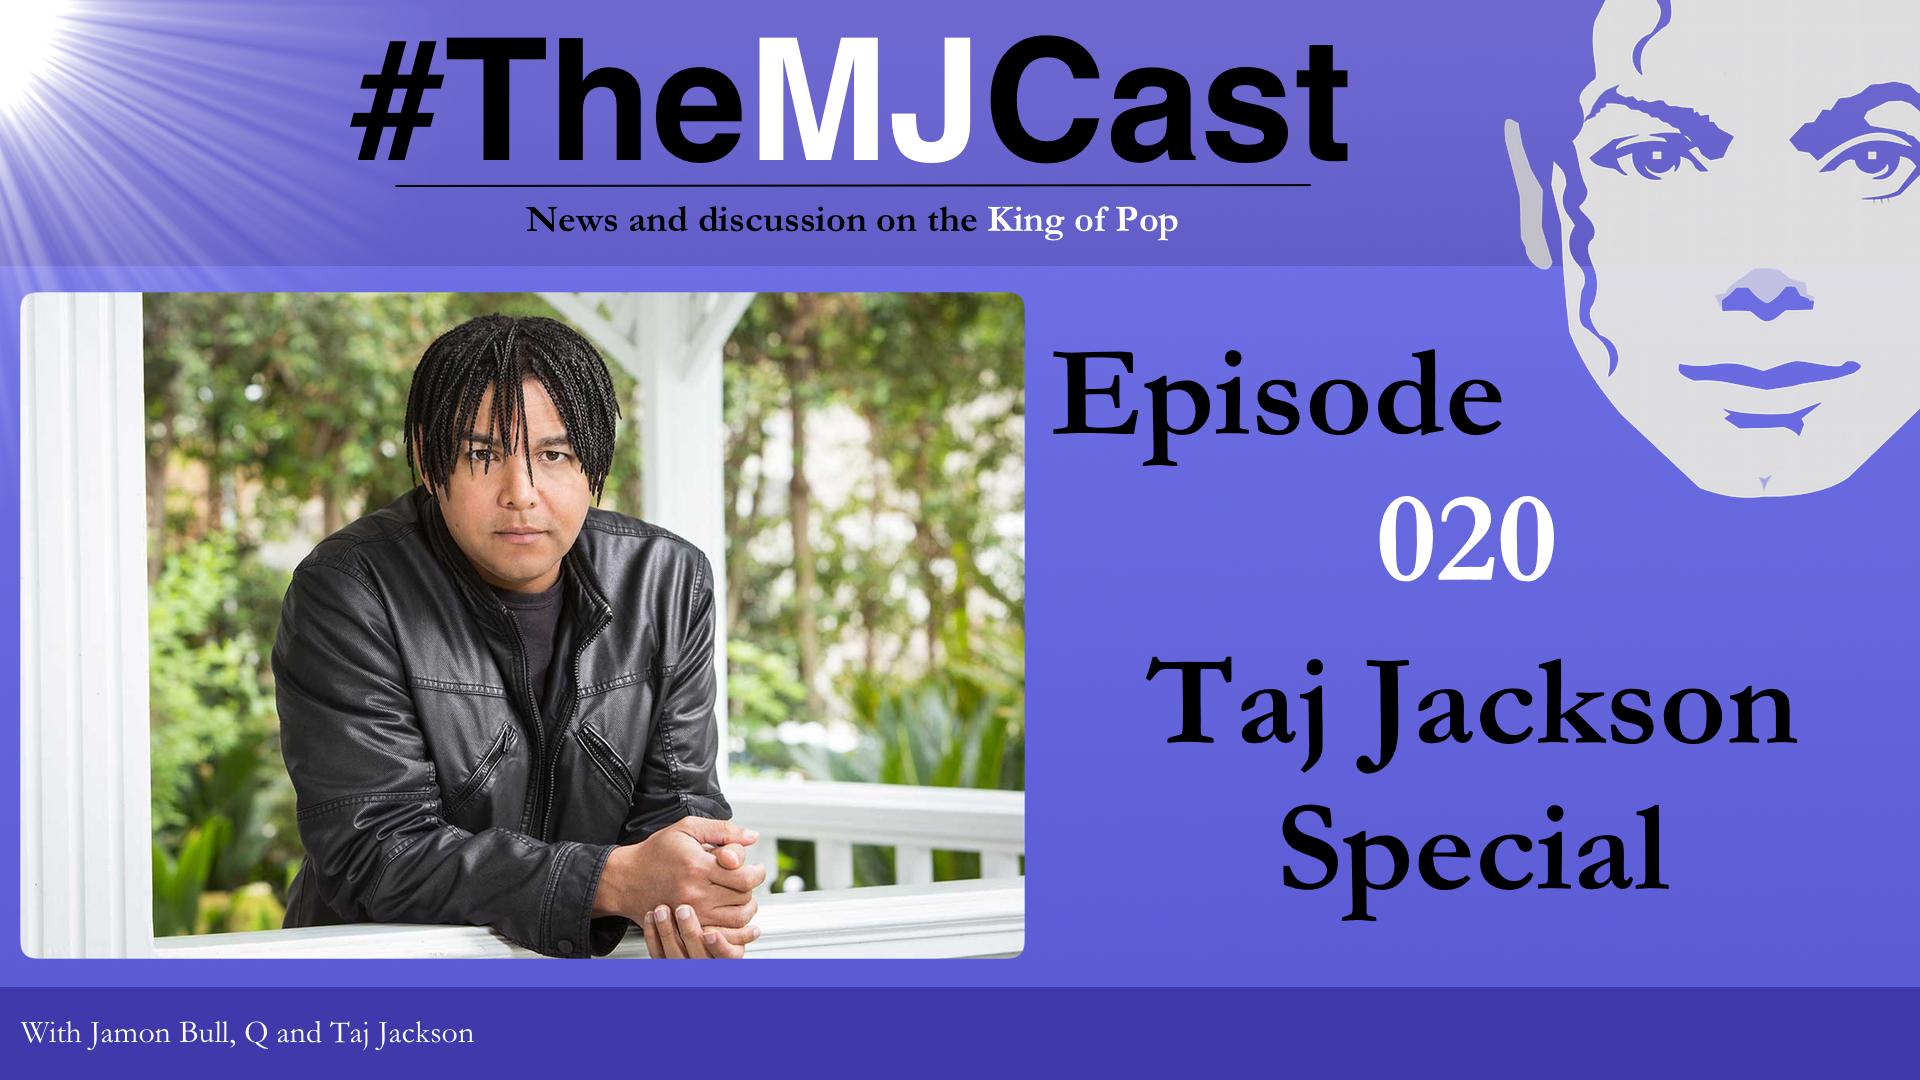 Episode 020 - Taj Jackson Special YouTube Art